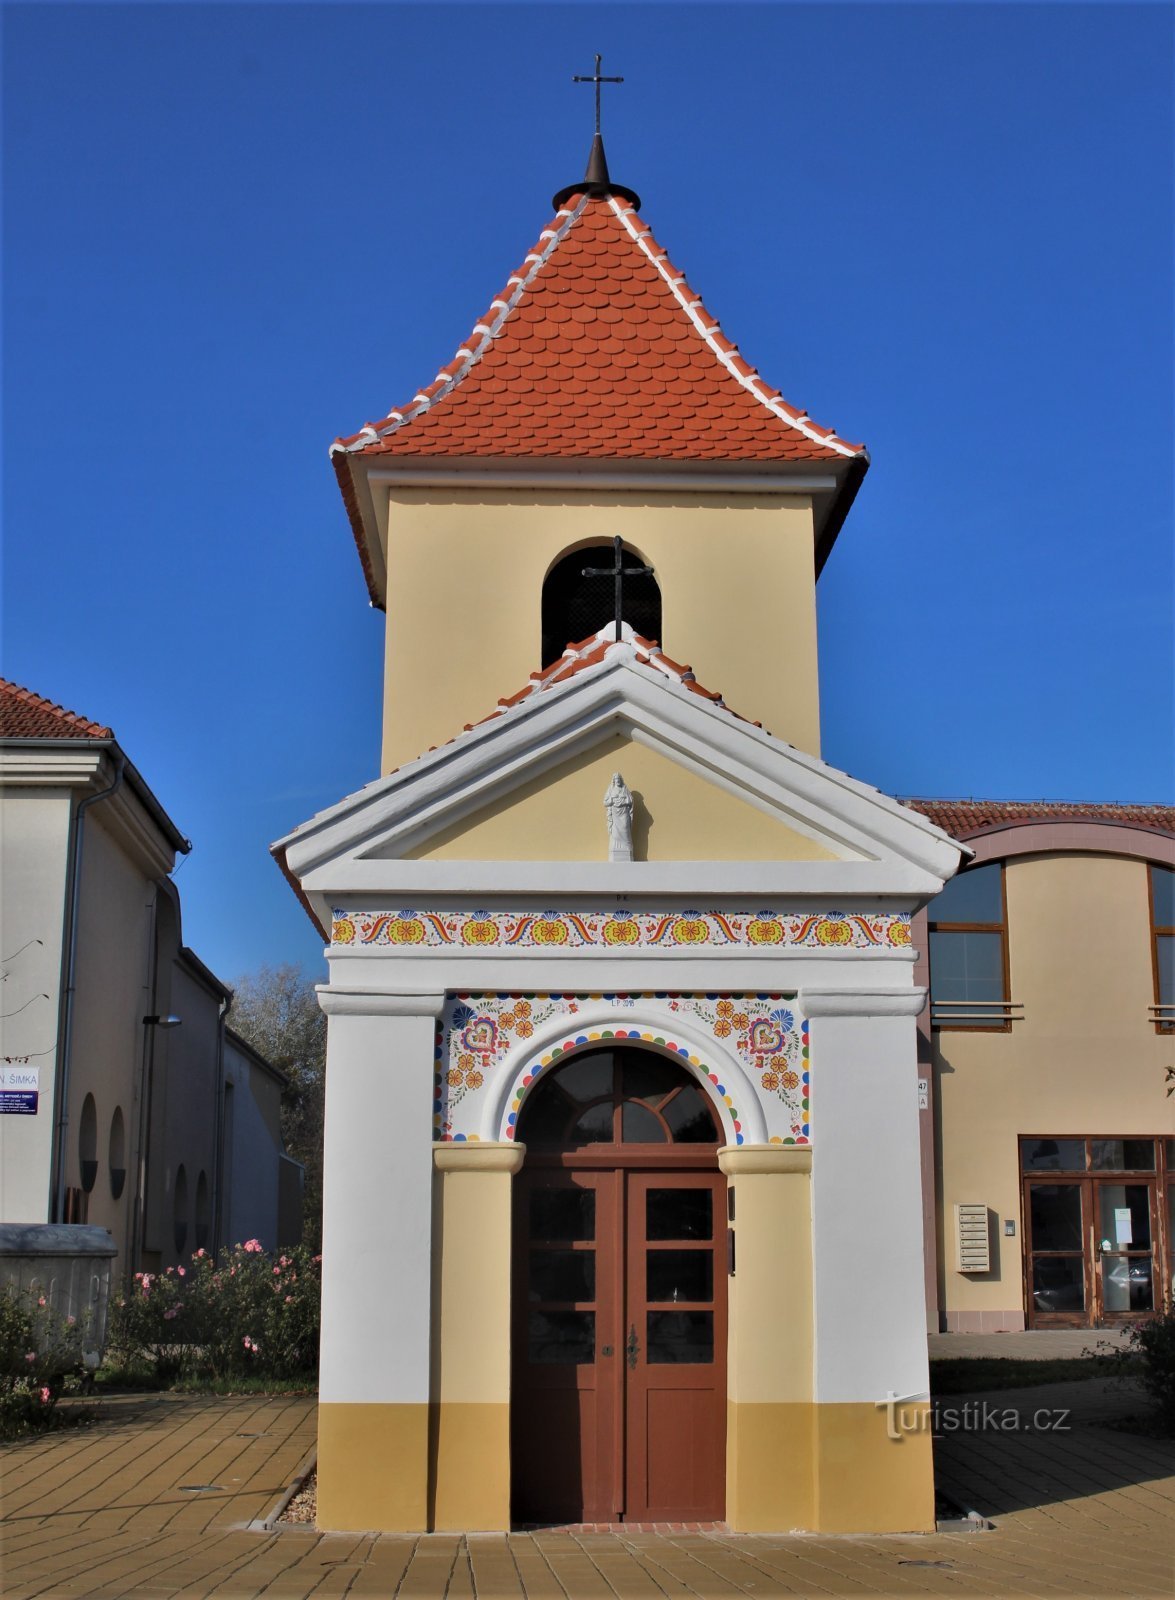 Стара Бржецлав - часовня св. Роча